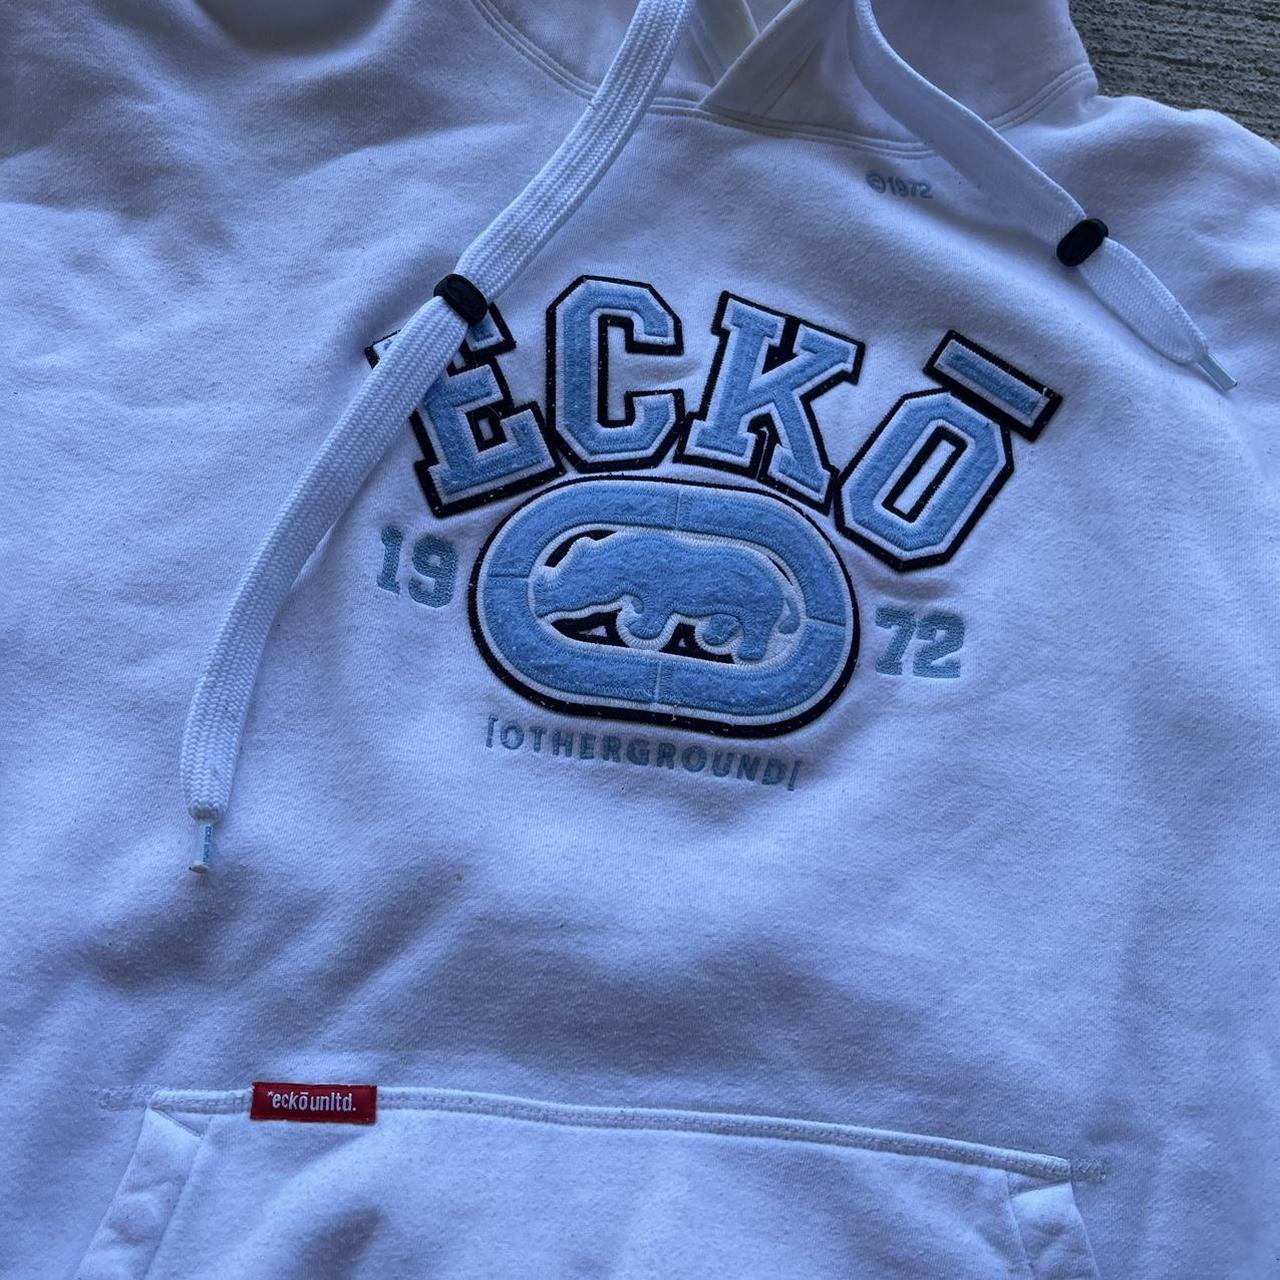 Y2k ecko unlimited hoodie - Gem